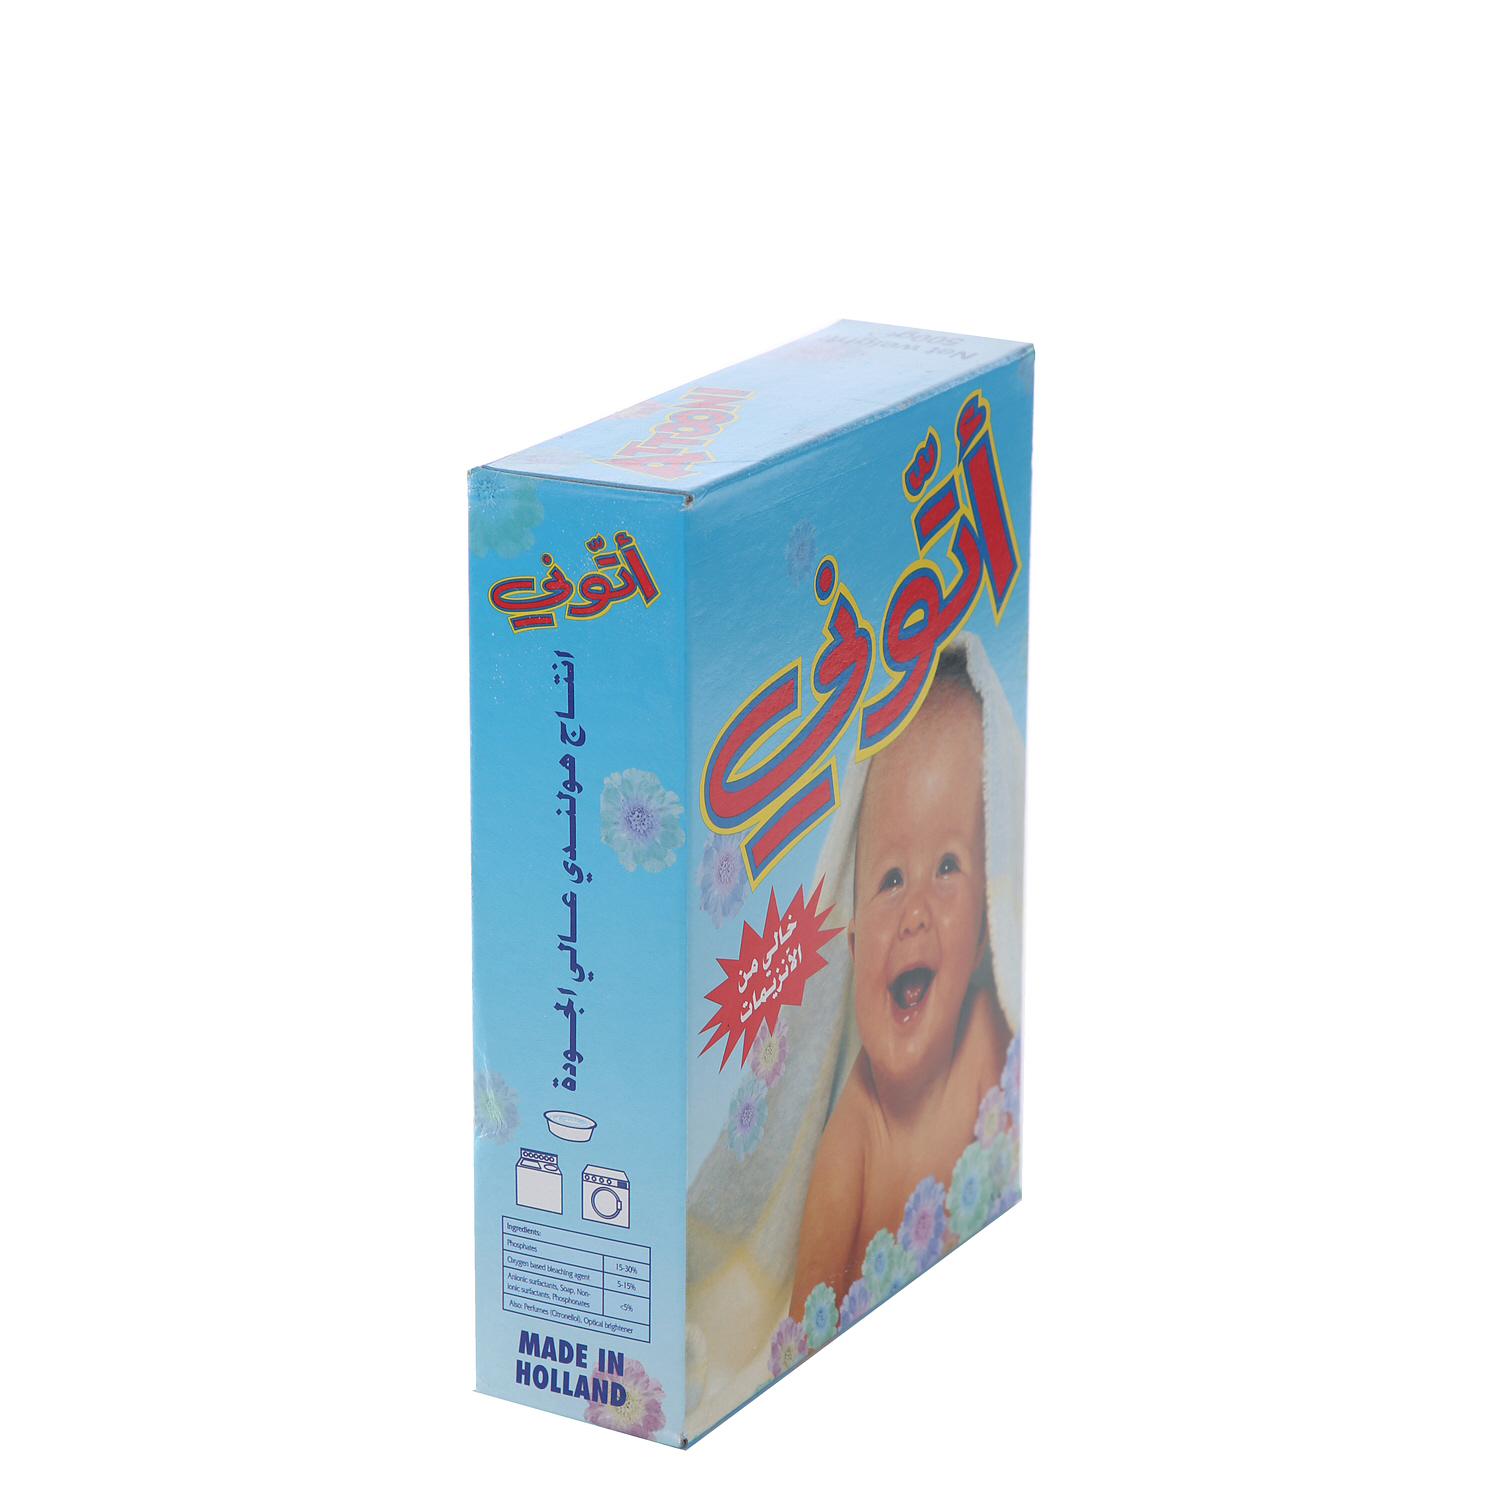 Attooni Detergent Powder 500 g